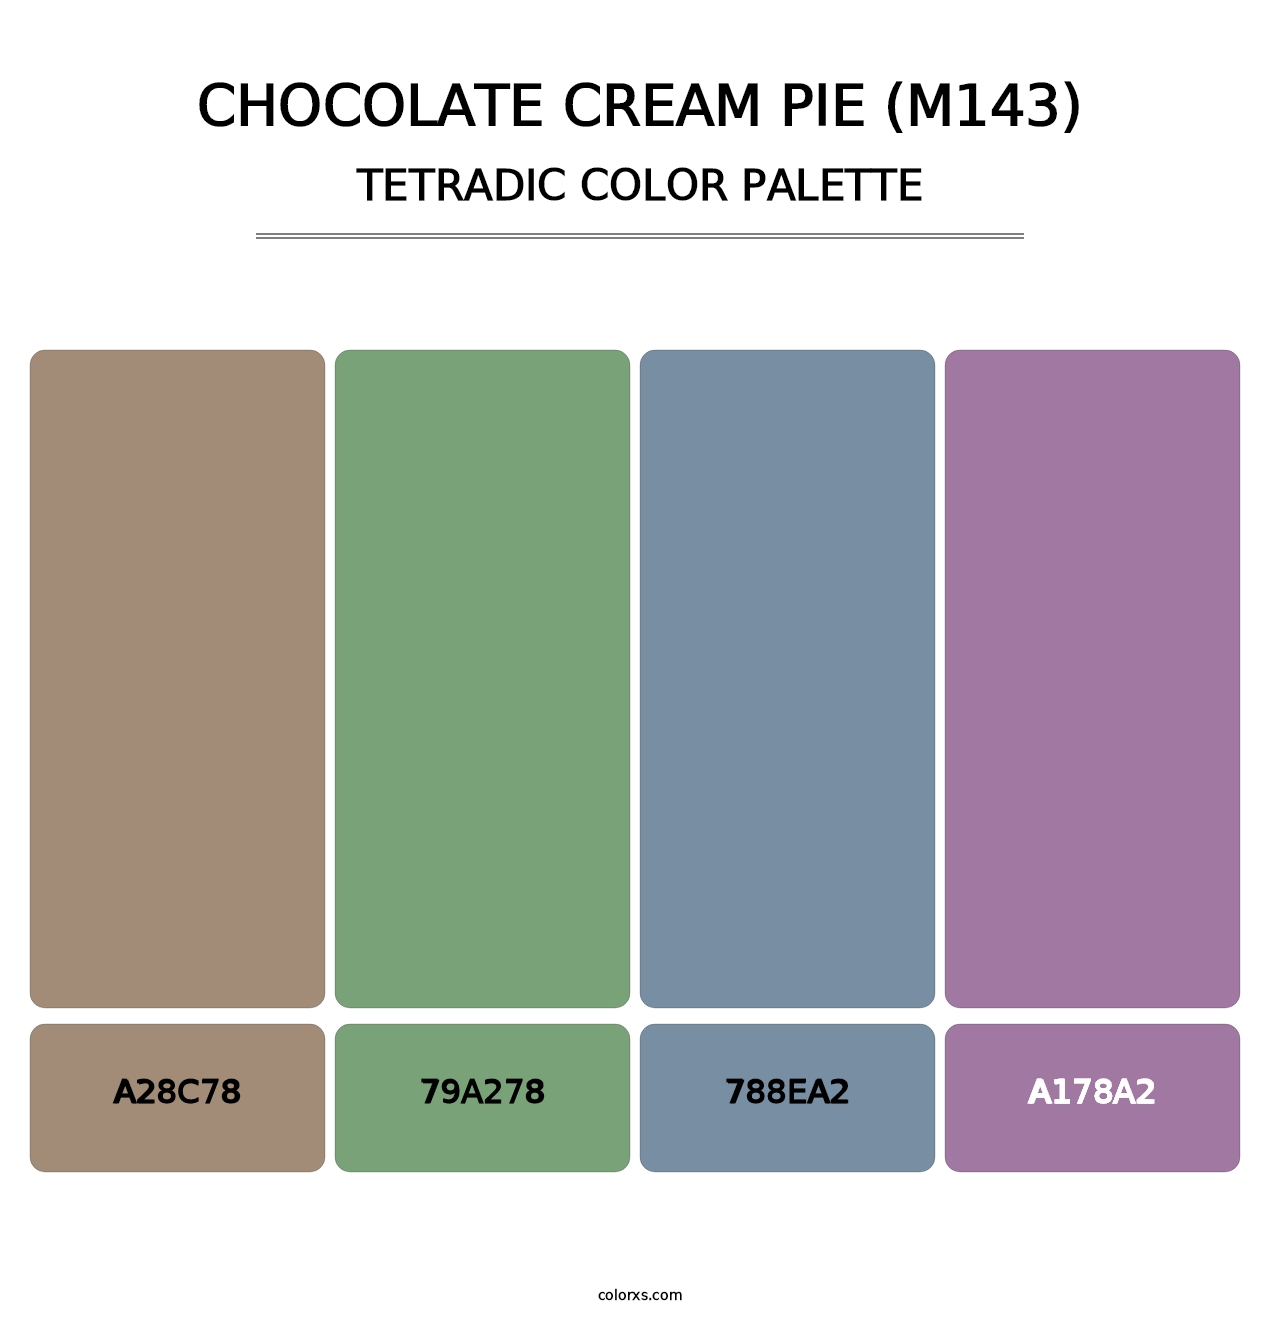 Chocolate Cream Pie (M143) - Tetradic Color Palette